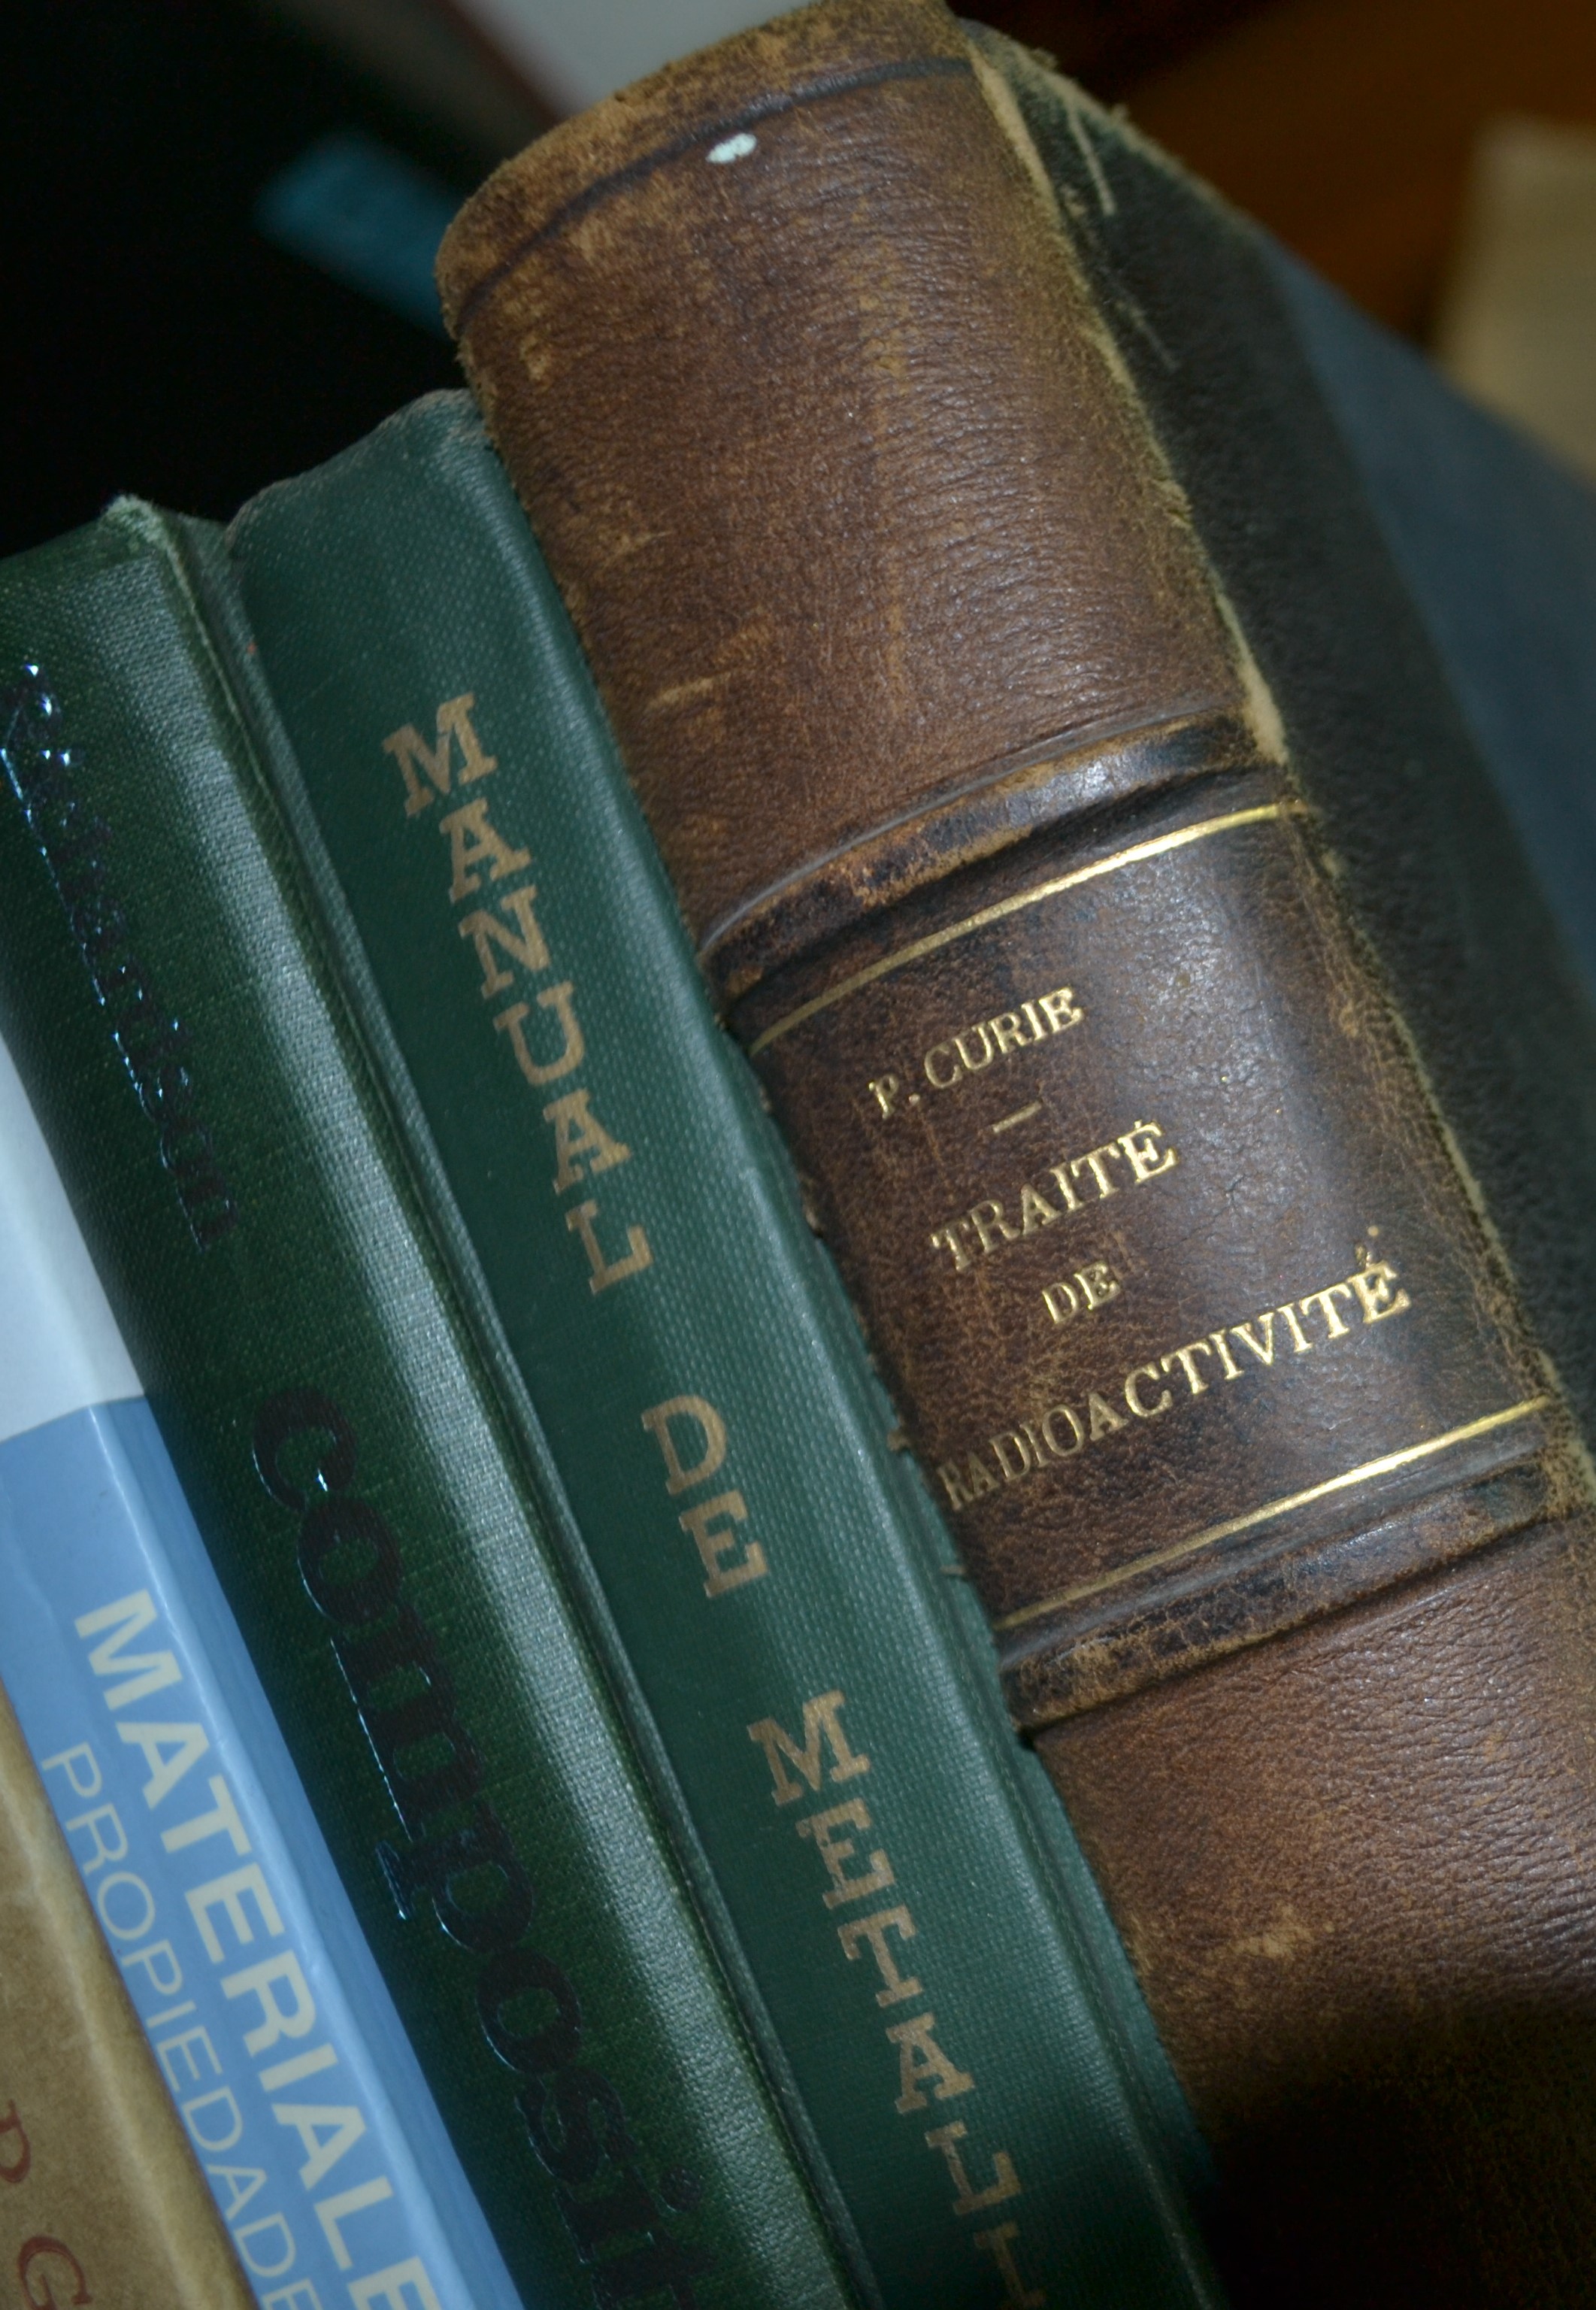 Libros inclinados sobre materiales y uno de ellos es de M. Curie